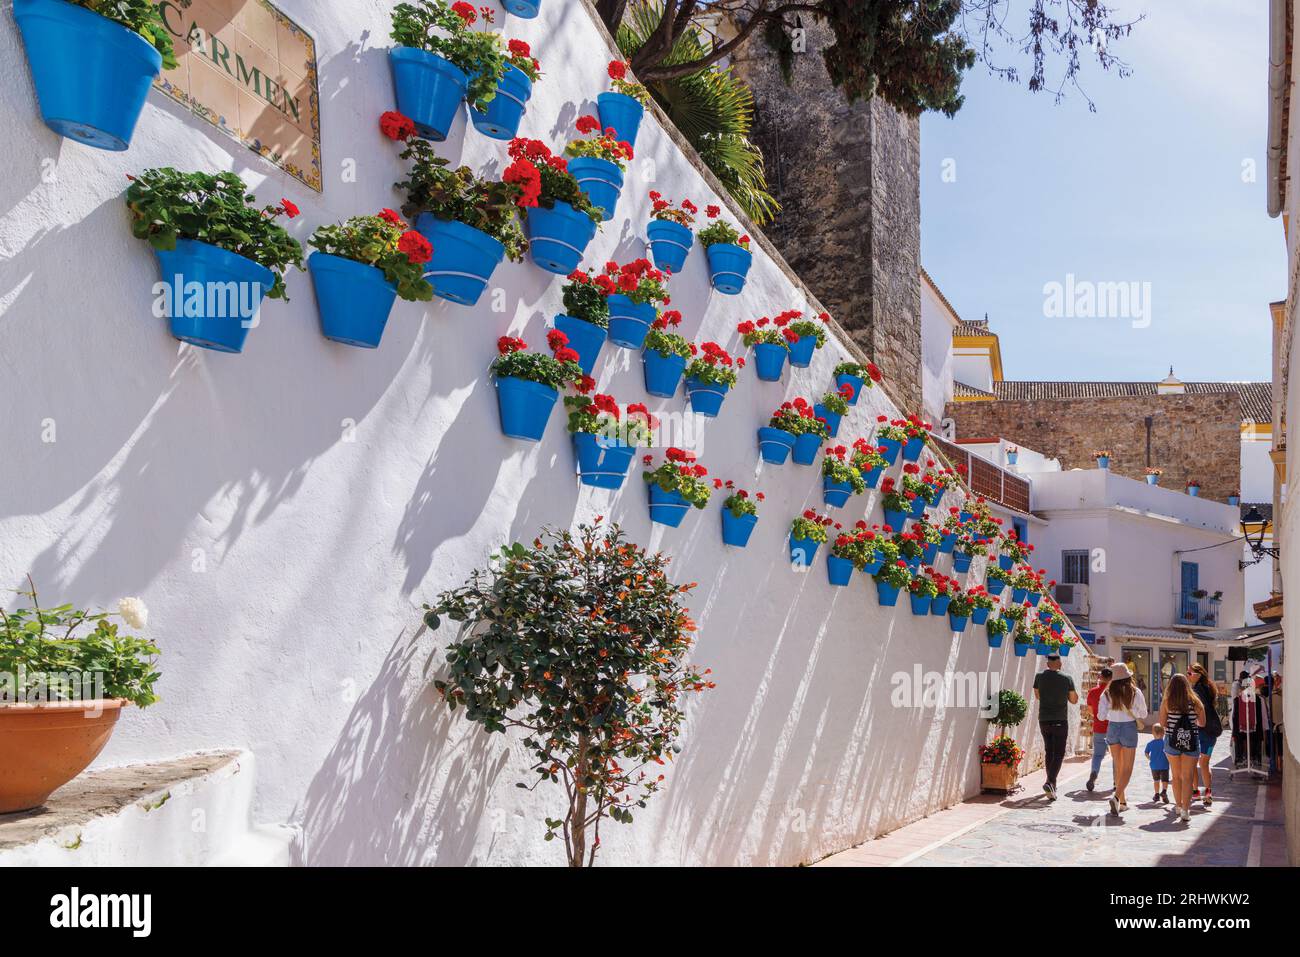 Marbella, Costa del Sol, Provinz Malaga, Andalusien, Südspanien. Geranienreihe in blauen Blumentöpfen in der Calle Carmen. Stockfoto